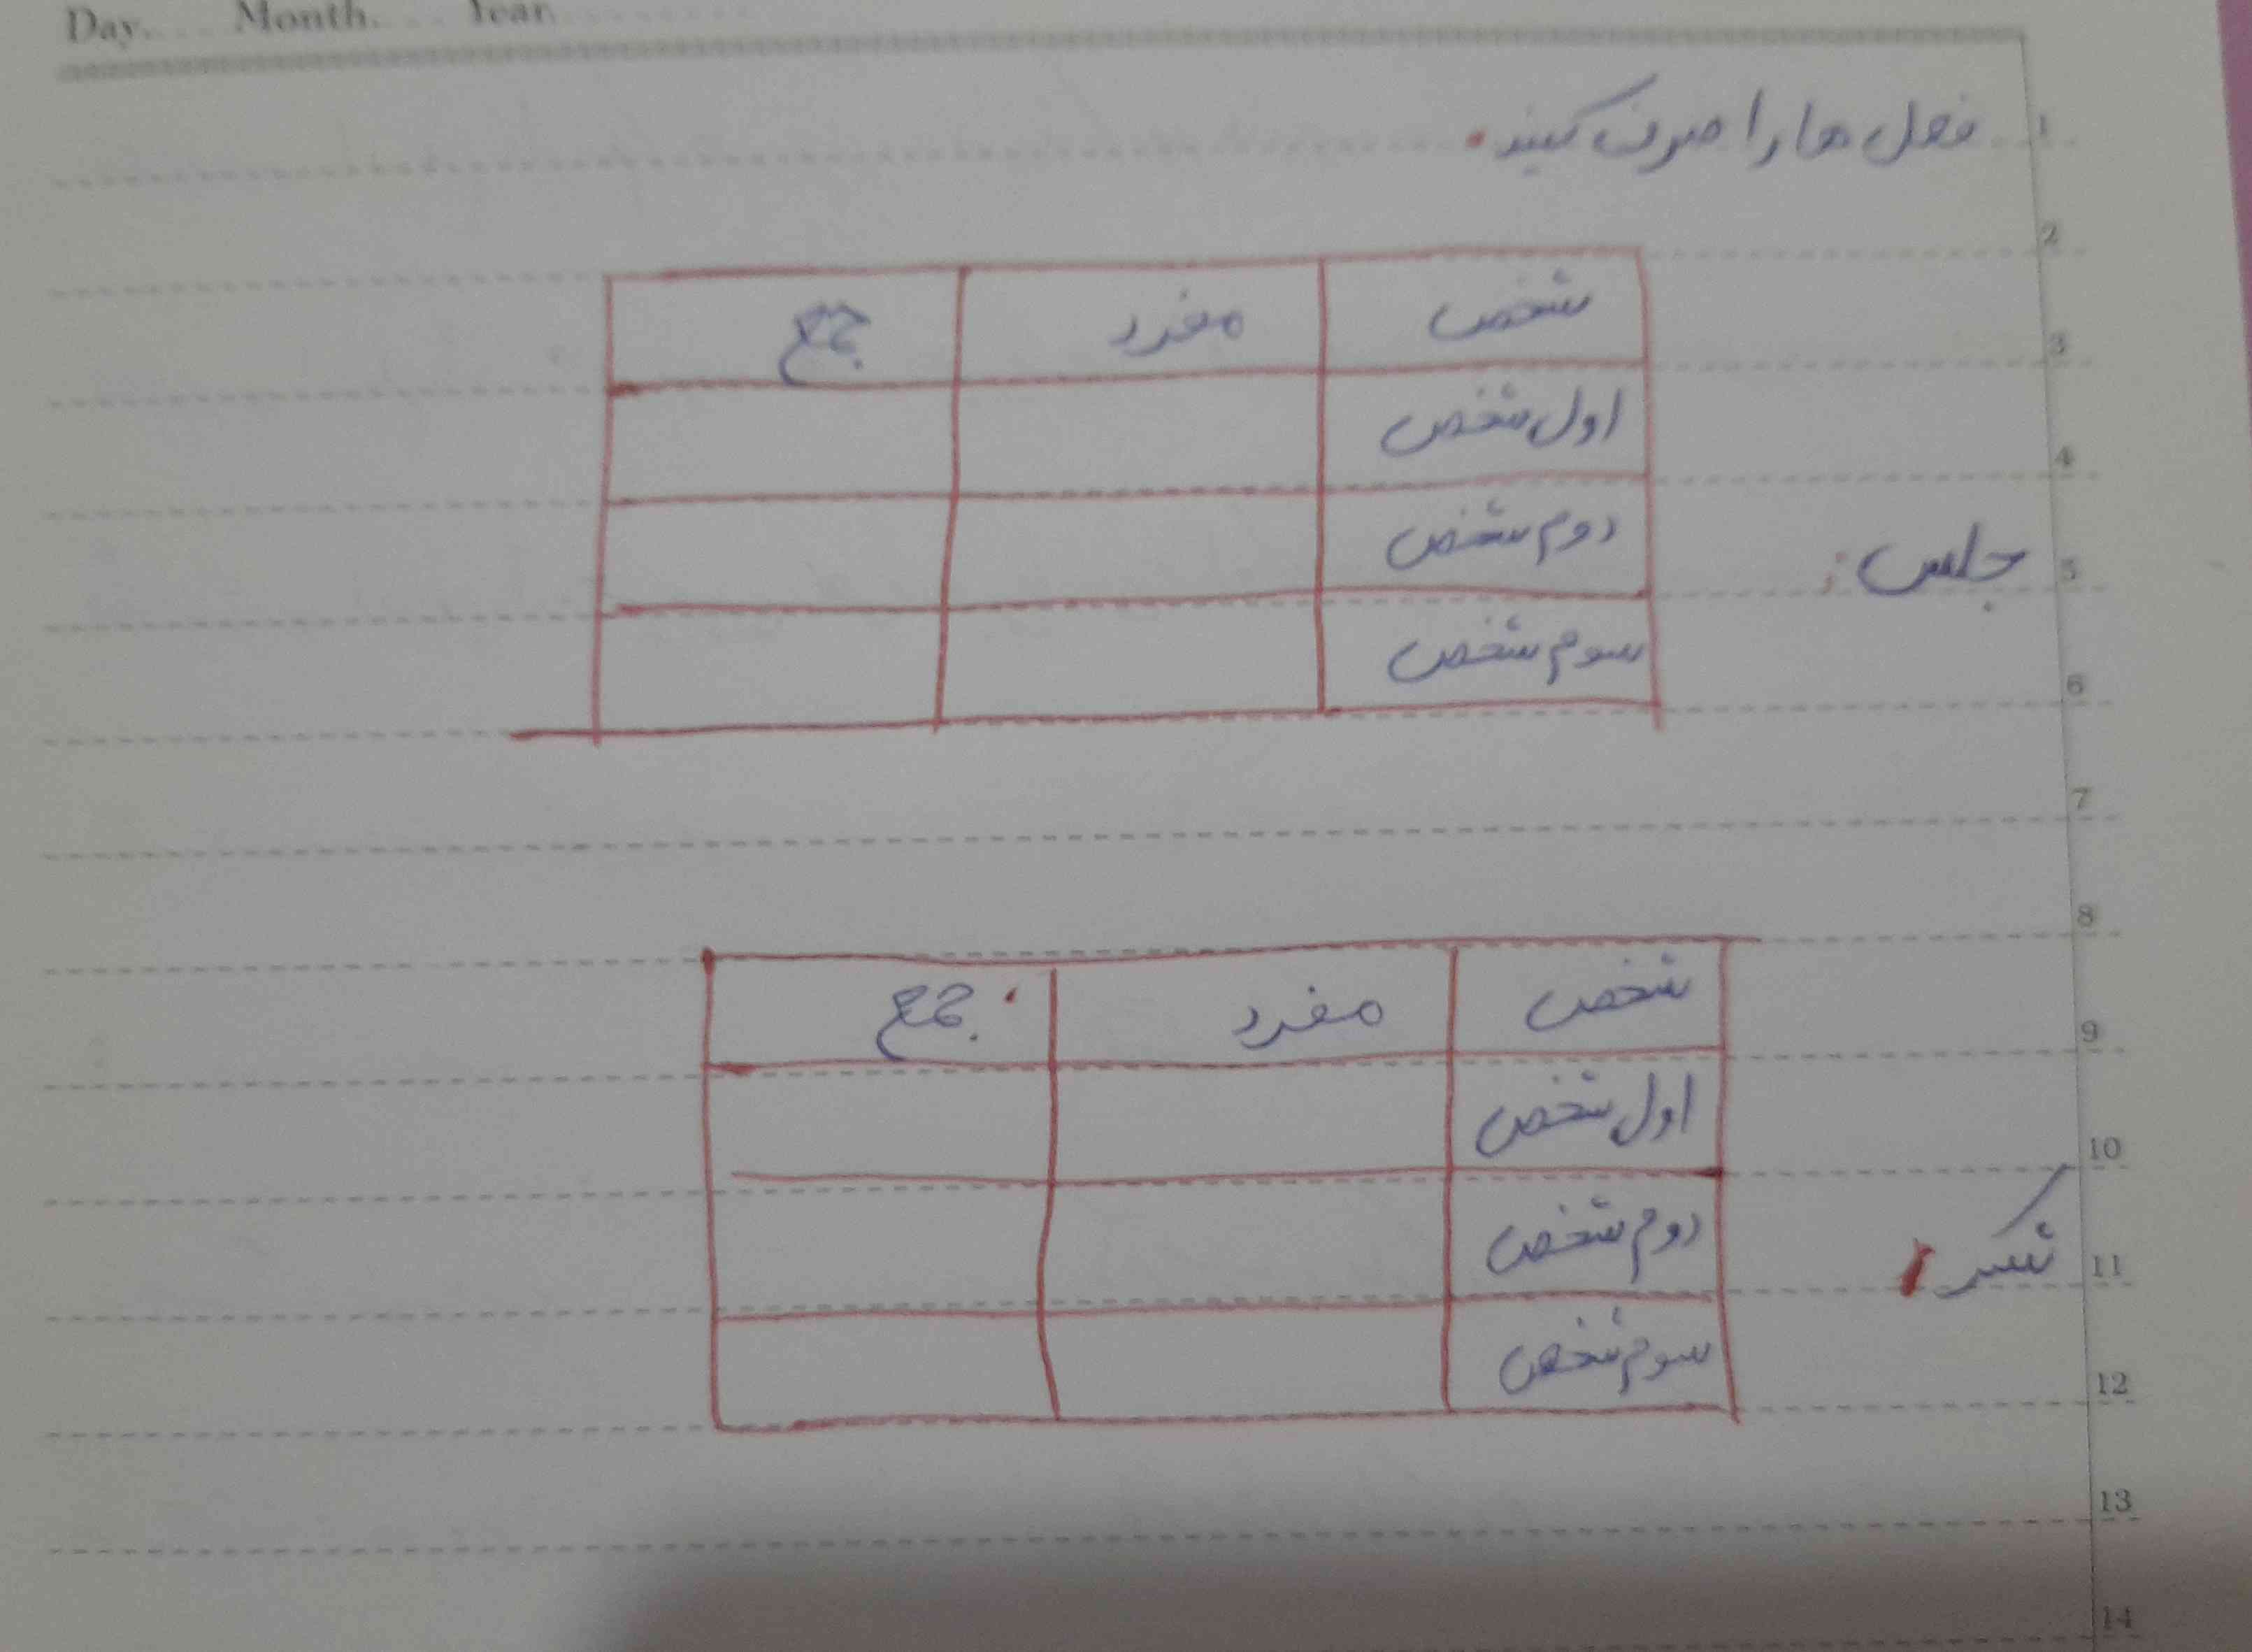 فعل شکر و جلس رو به عربی صرف کنید،. 
تاج میدم